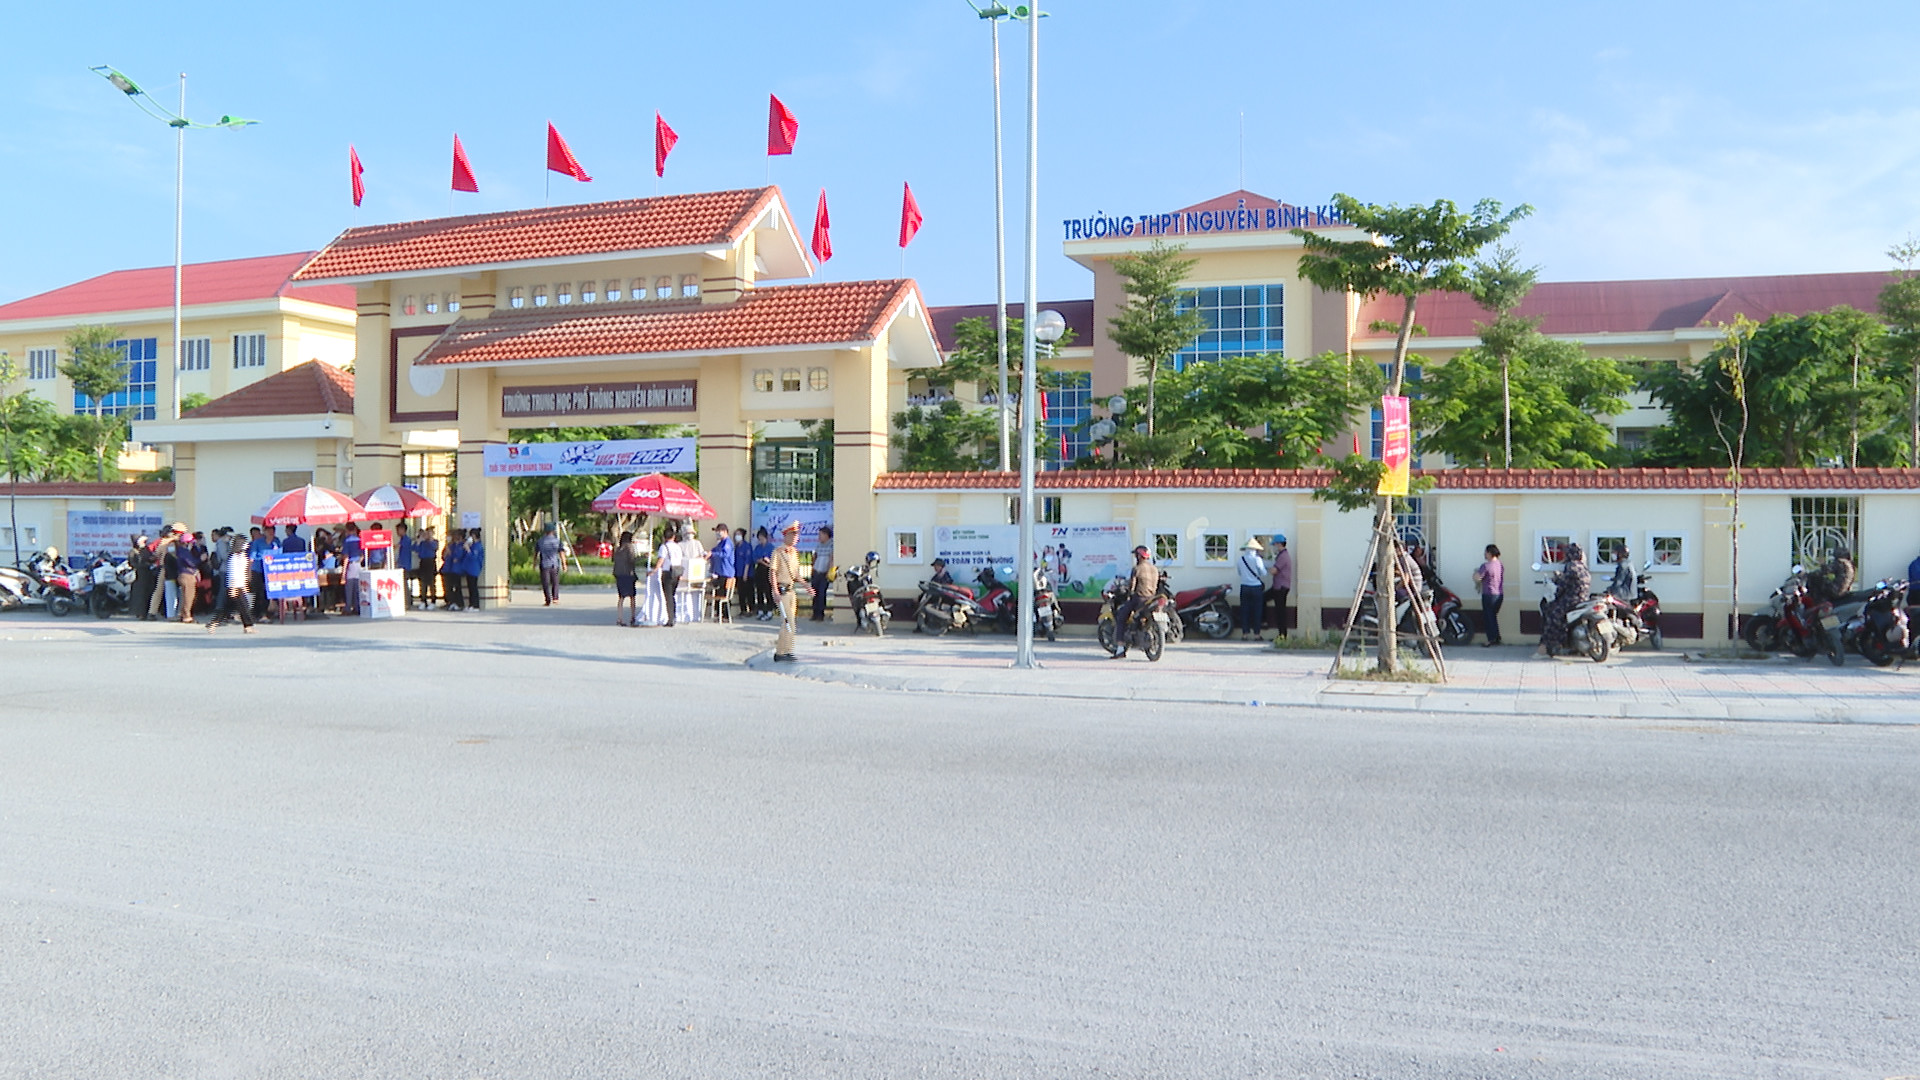 Phụ huynh chờ đón các thí sinh ở điểm thi Trường THPT Nguyễn Bỉnh Khiêm.